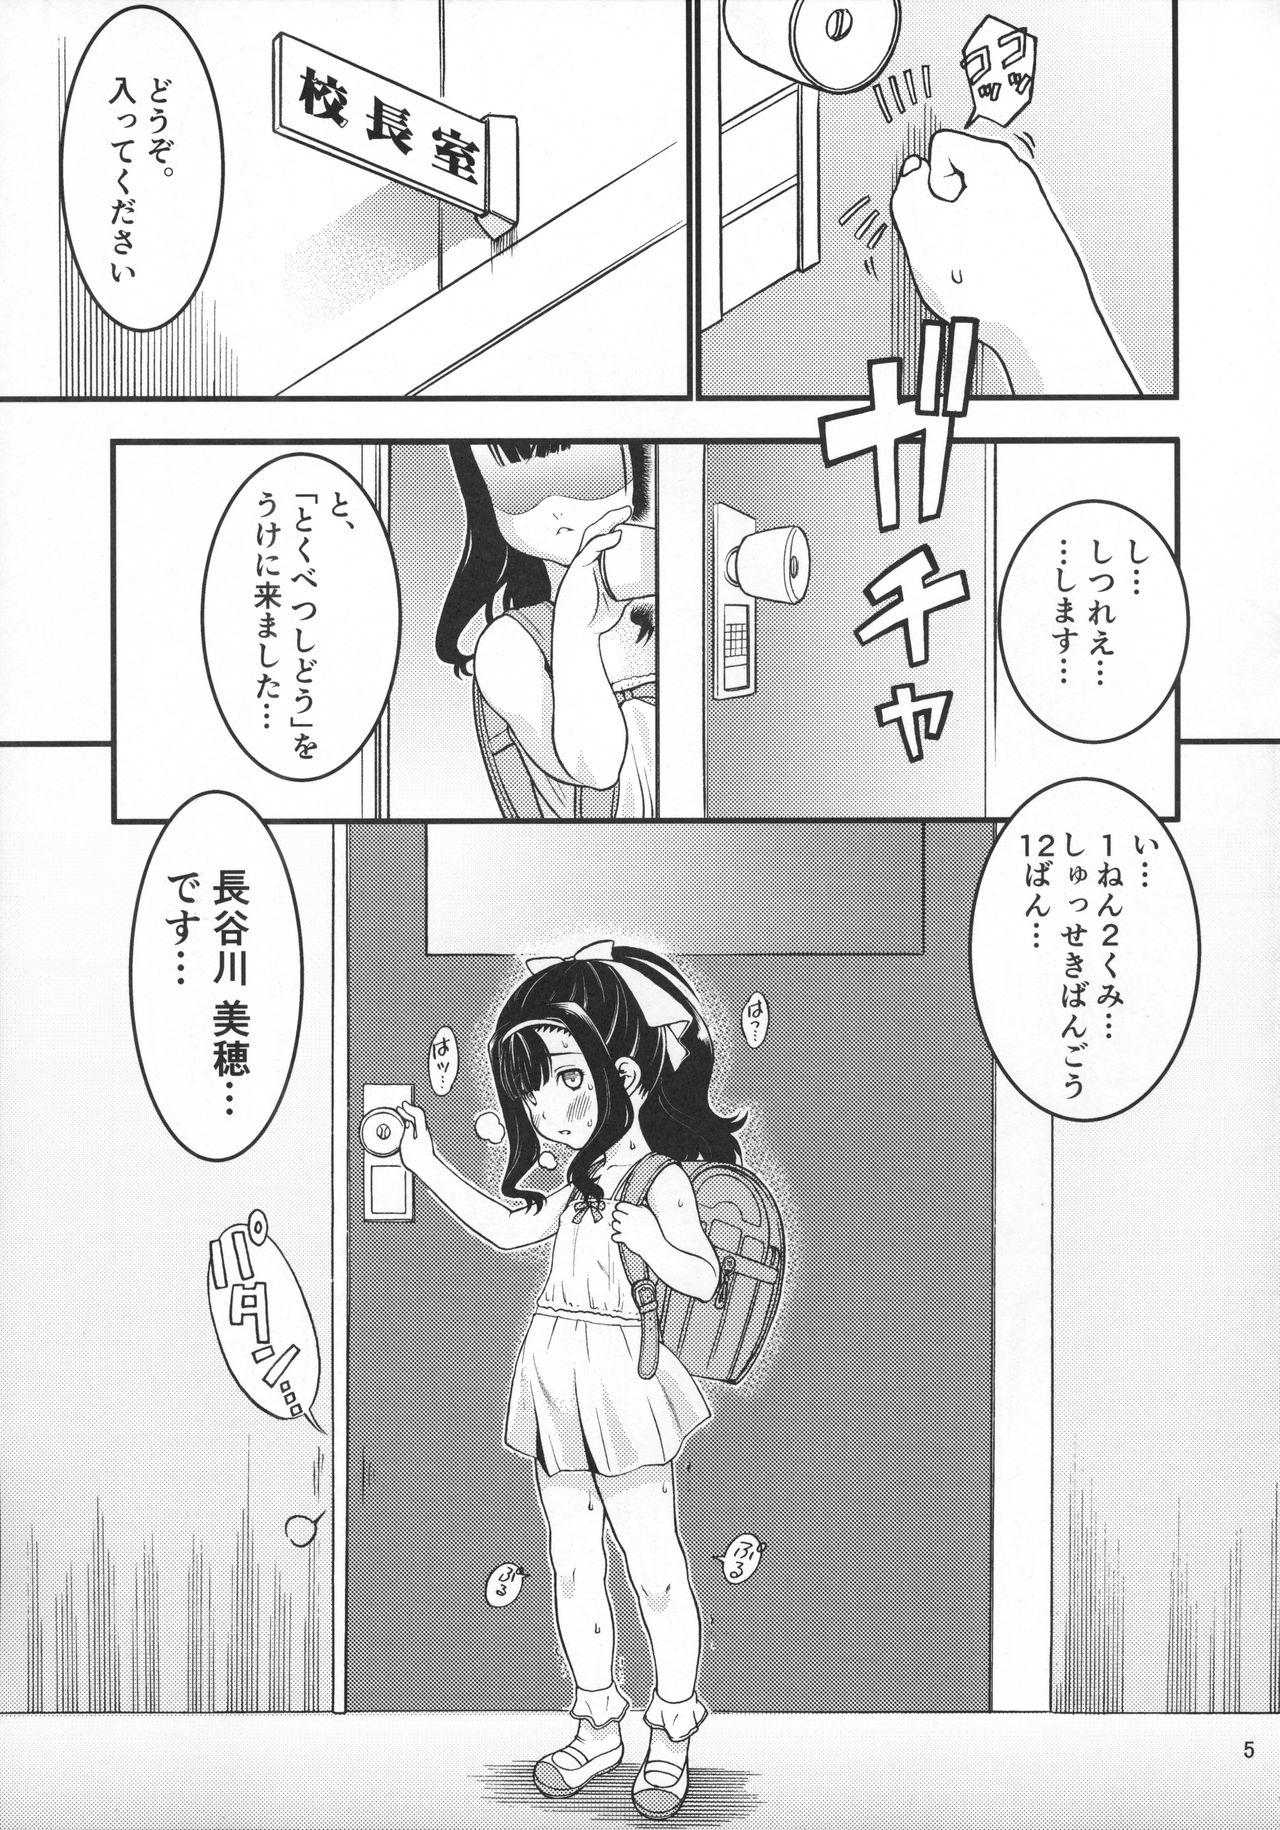 Boob Heisei 29-nendo Tokushu Ginou Yuushuu Seito Shidou Youkou Old - Page 7